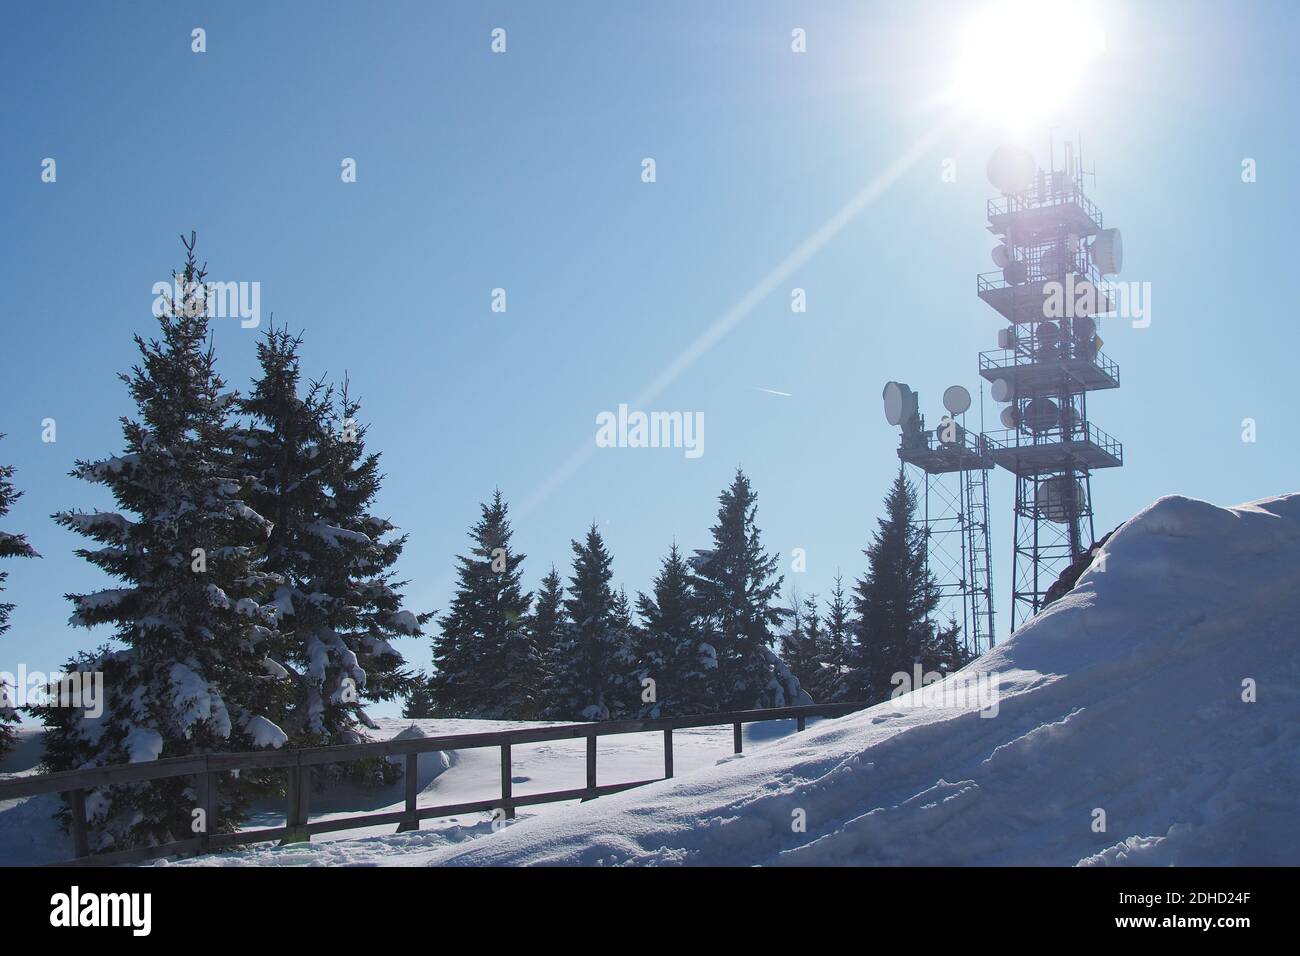 Kommunikationsturm mit Mikrowellenrelais-Geschirr auf dem Schoeckl in Österreich im Winter. Die Bäume und der Boden sind mit Schnee bedeckt. Stockfoto